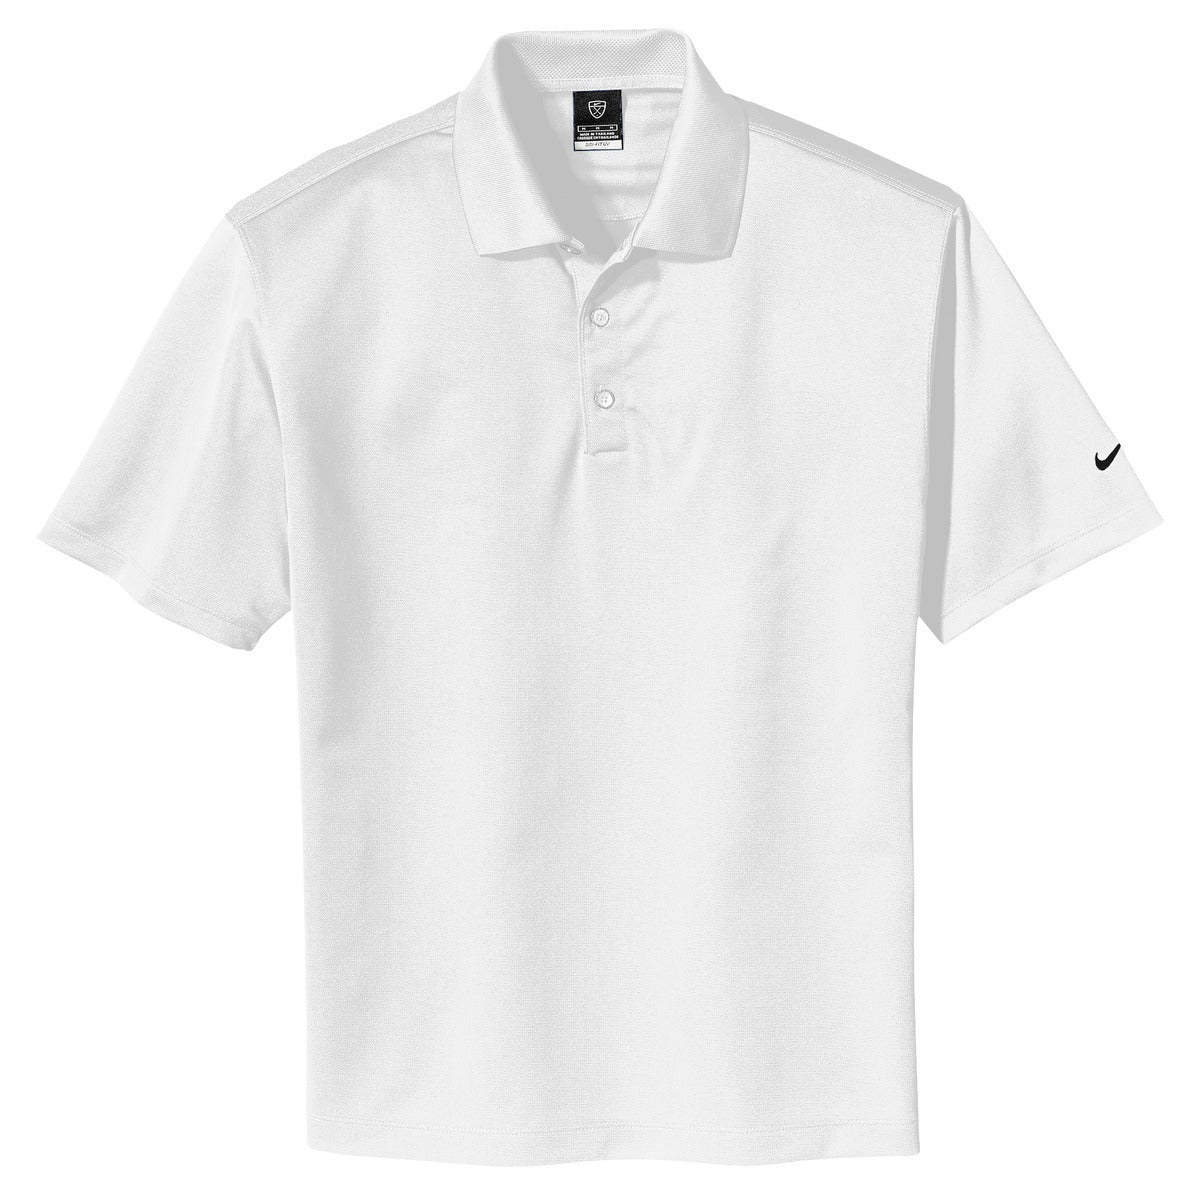 203690 Nike Golf Tech Basic Dri-FIT Polo